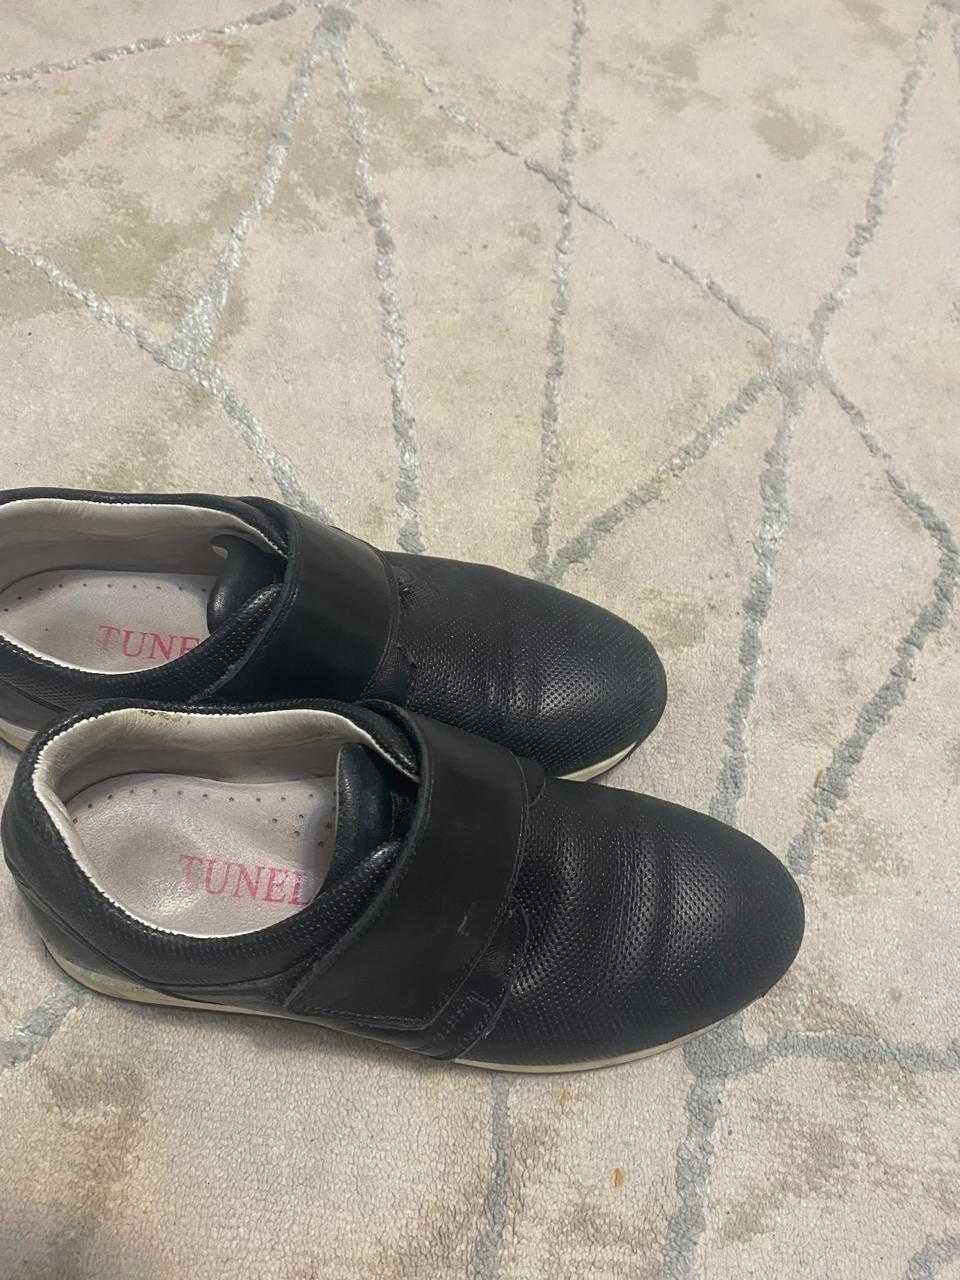 продам туфли для мальчика 33 размер, ортопедия, Турция